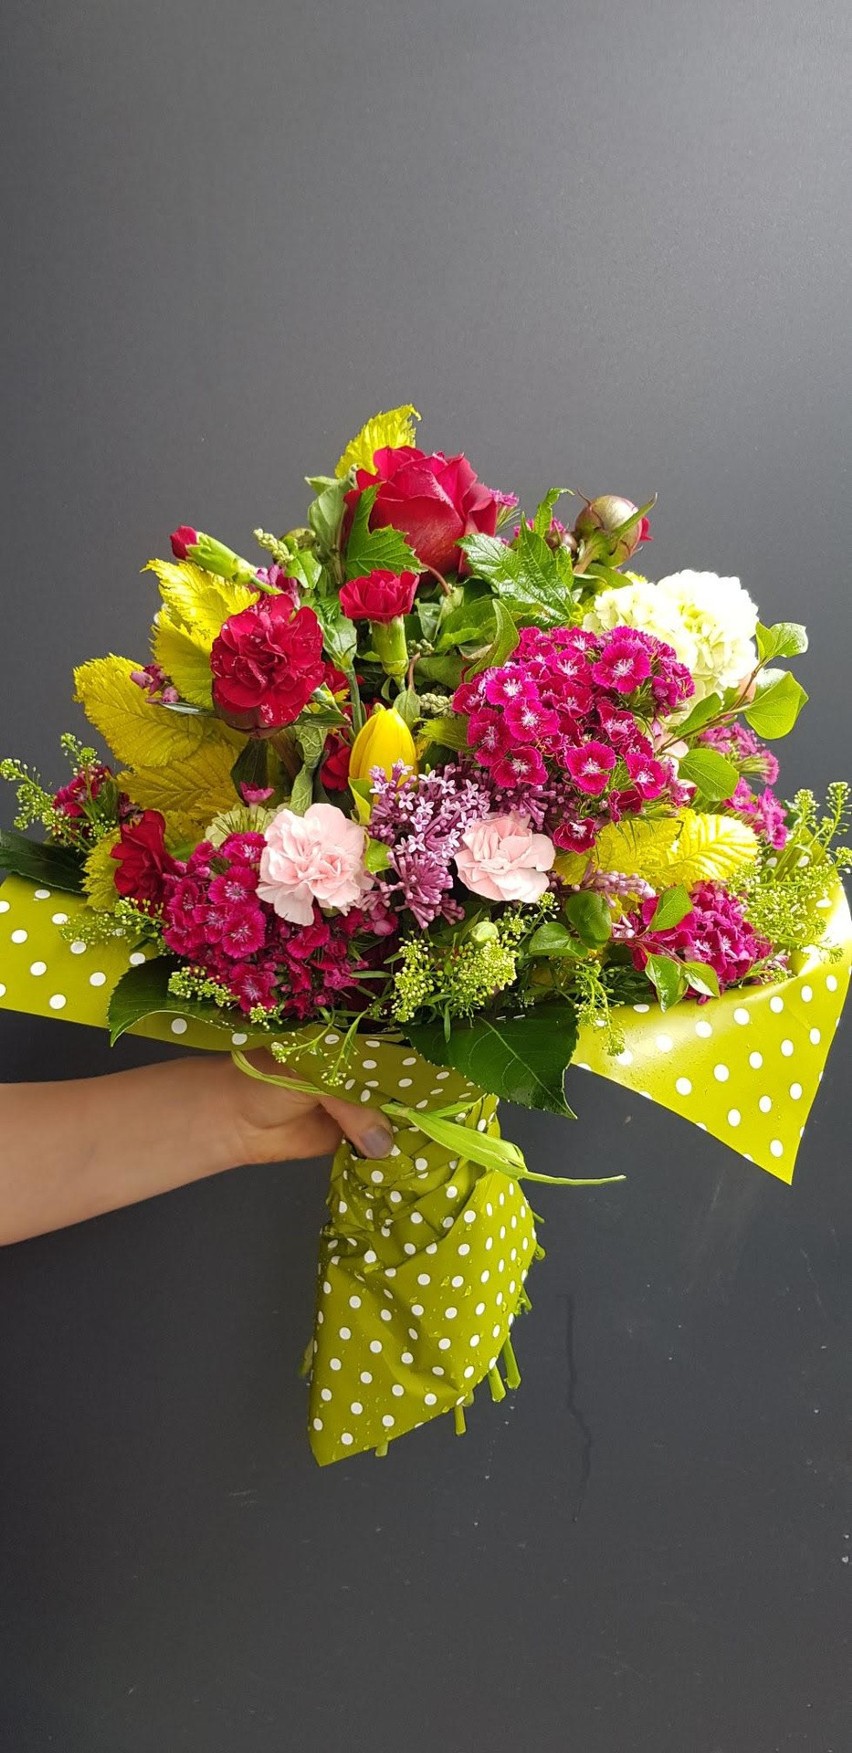 Jutro 26 maja - Dzień Matki. Jakie kwiaty dołączymy do życzeń dla swoich ukochanych mam? 